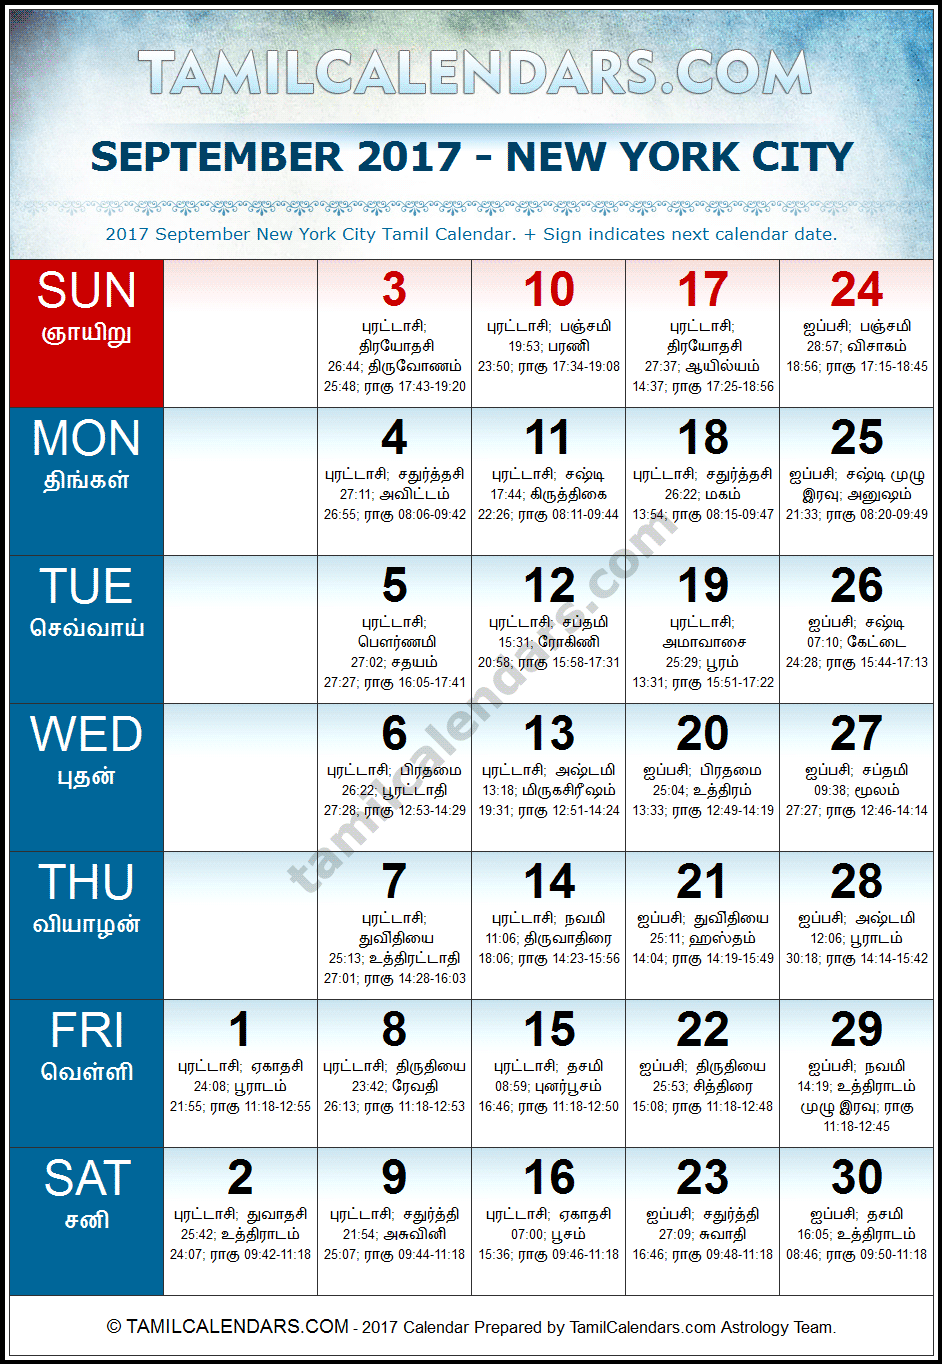 September 2017 Tamil Calendar for New York, USA